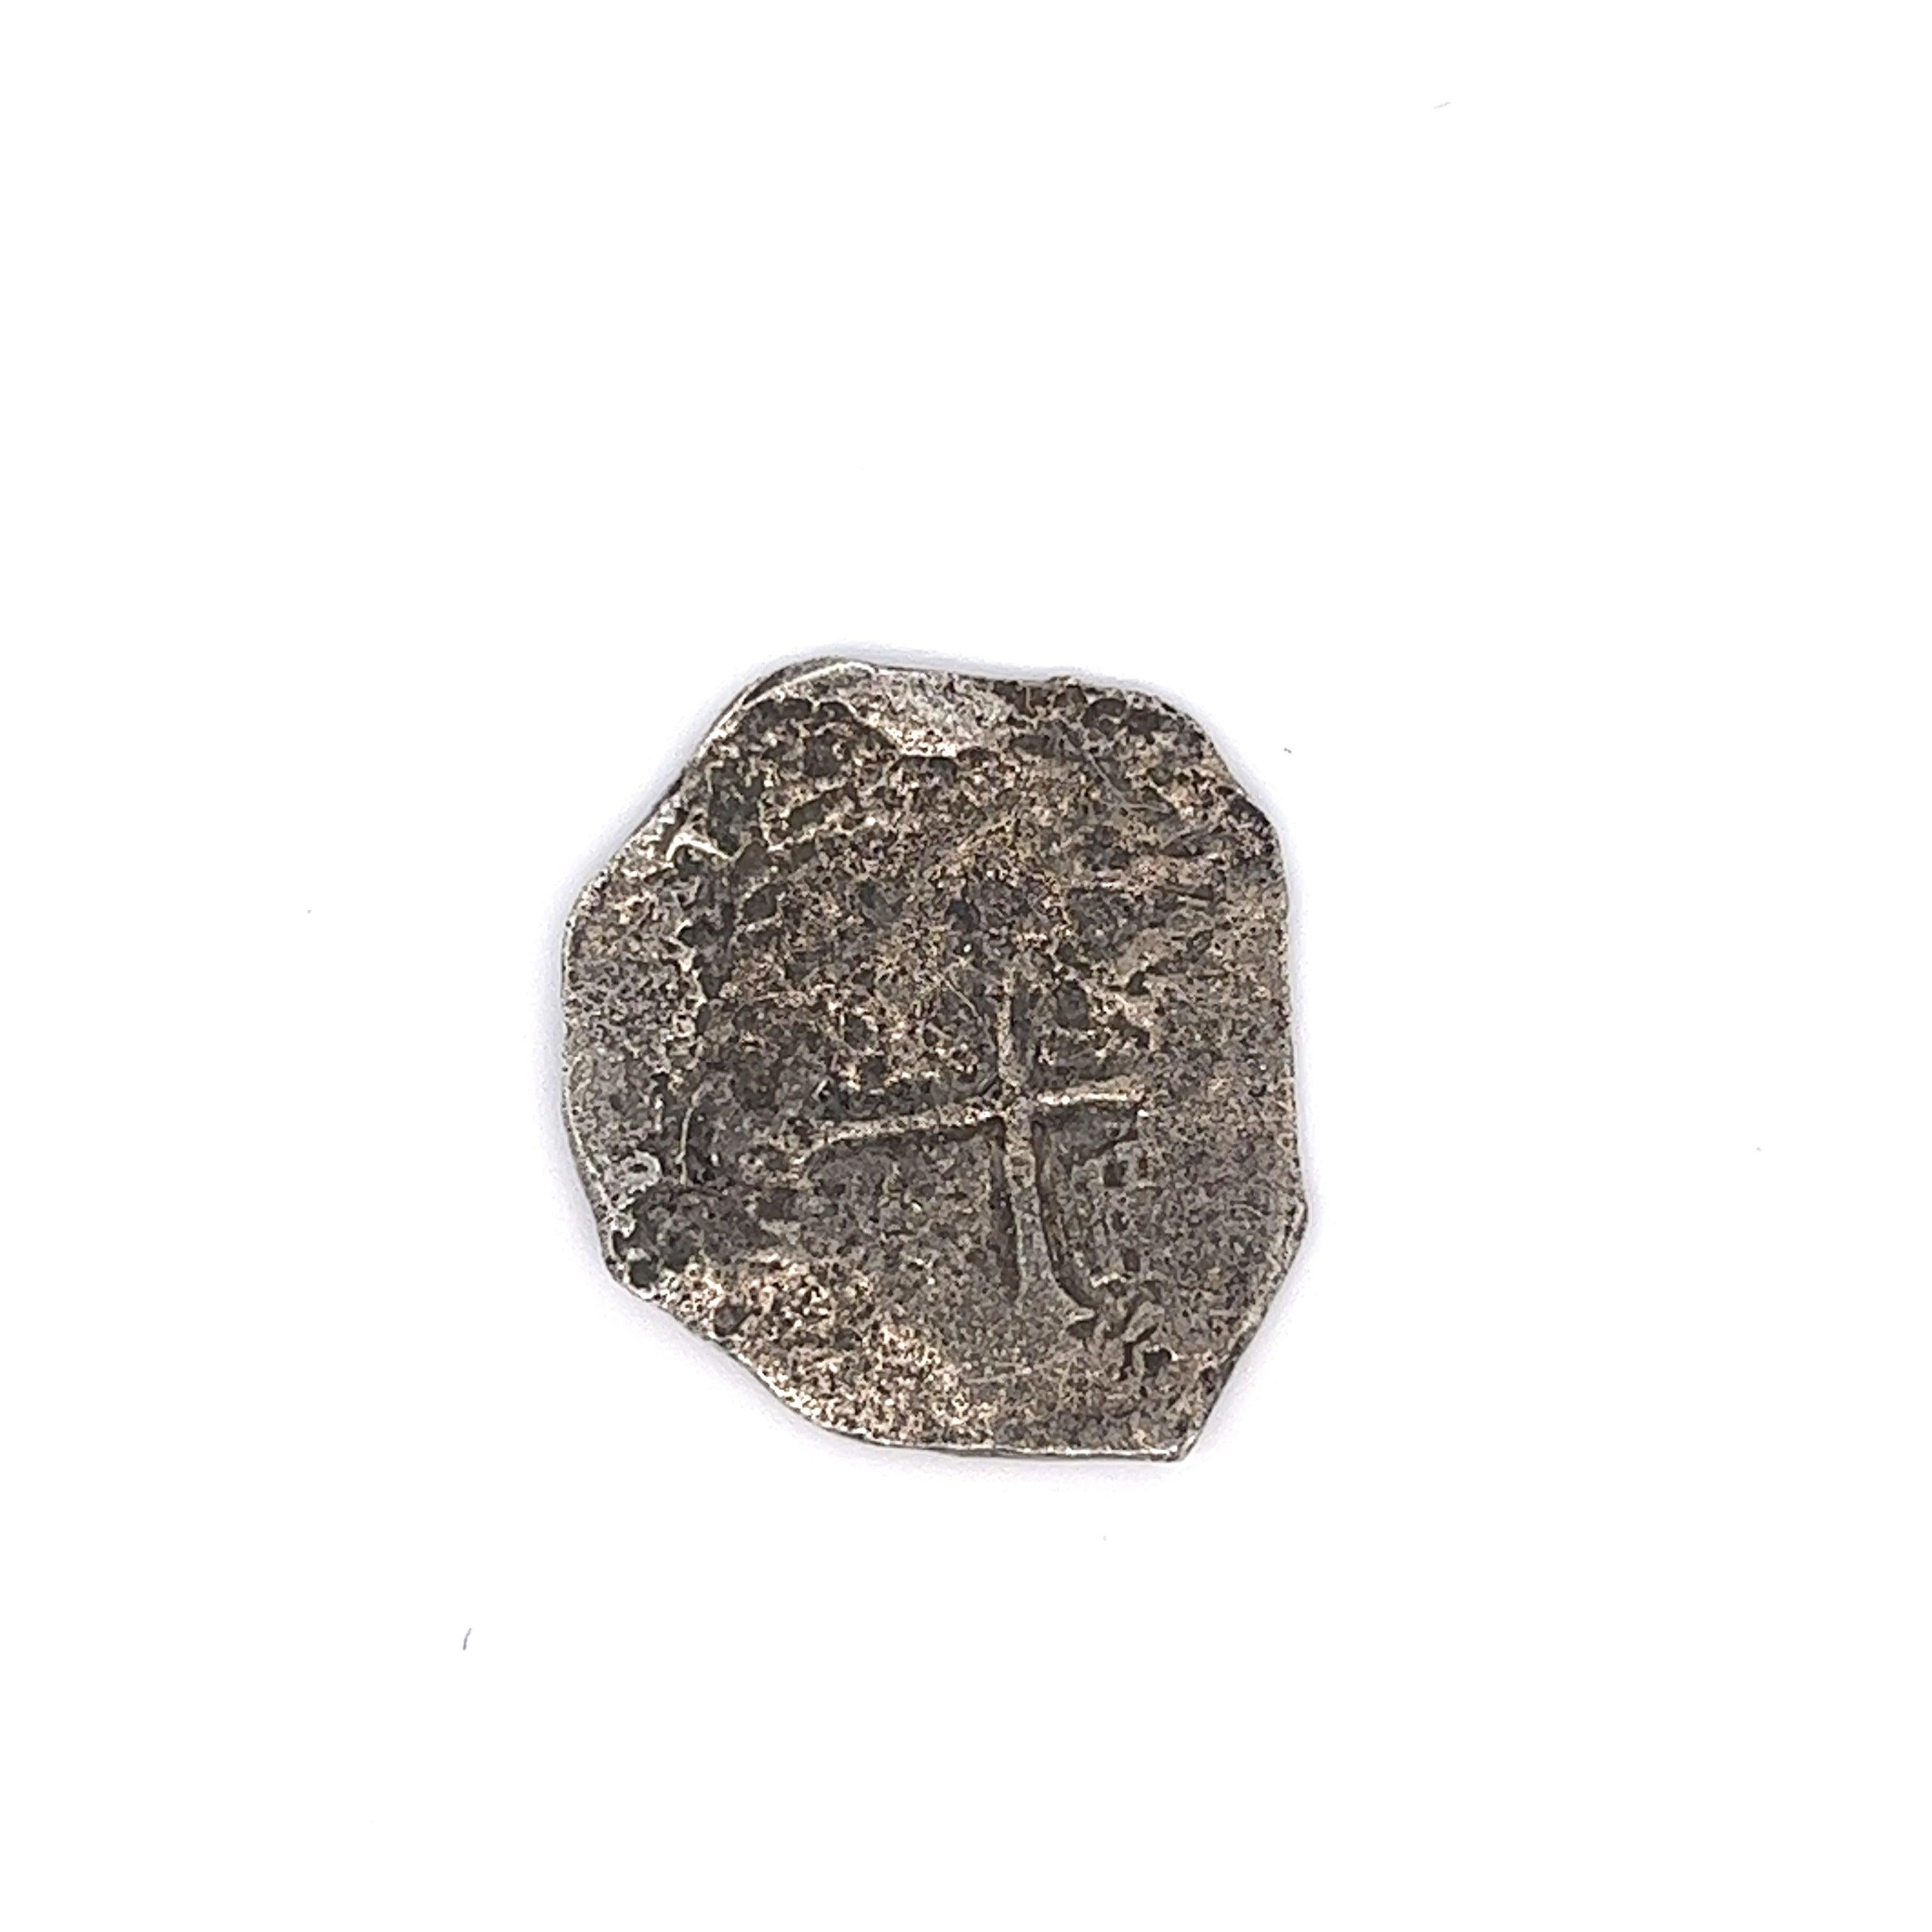 Original Atocha Coin 4 Reale Grade 2 Mexico Mint Unmounted #85A-159726. Complet avec le certificat original signé par Mel Fisher de Treasure Salvors INC. 

La dénomination 4 Reale devient de plus en plus rare : la plupart des pièces à bord de